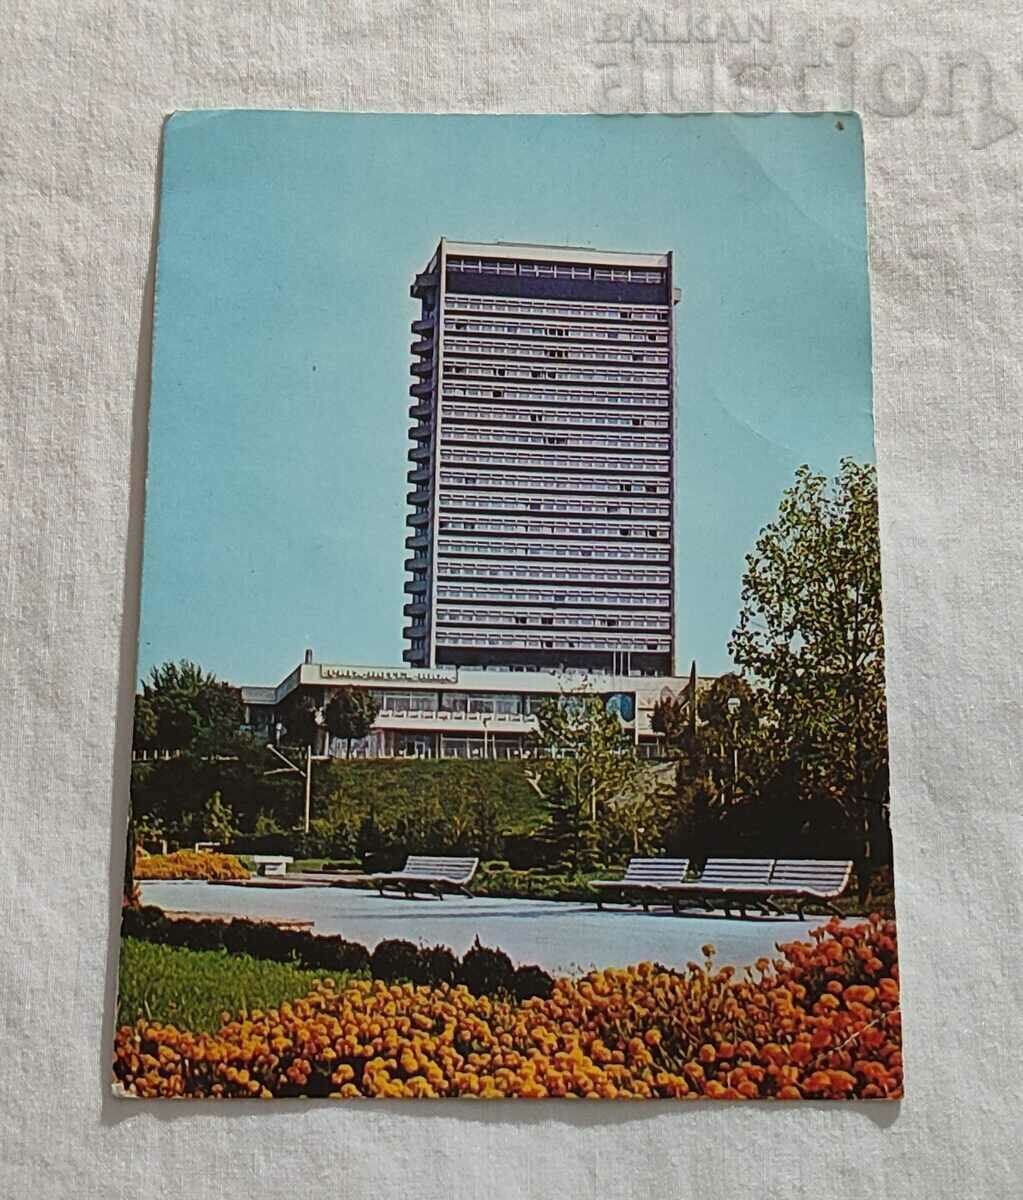 RUSE HOTEL RIGA P.K. 1980